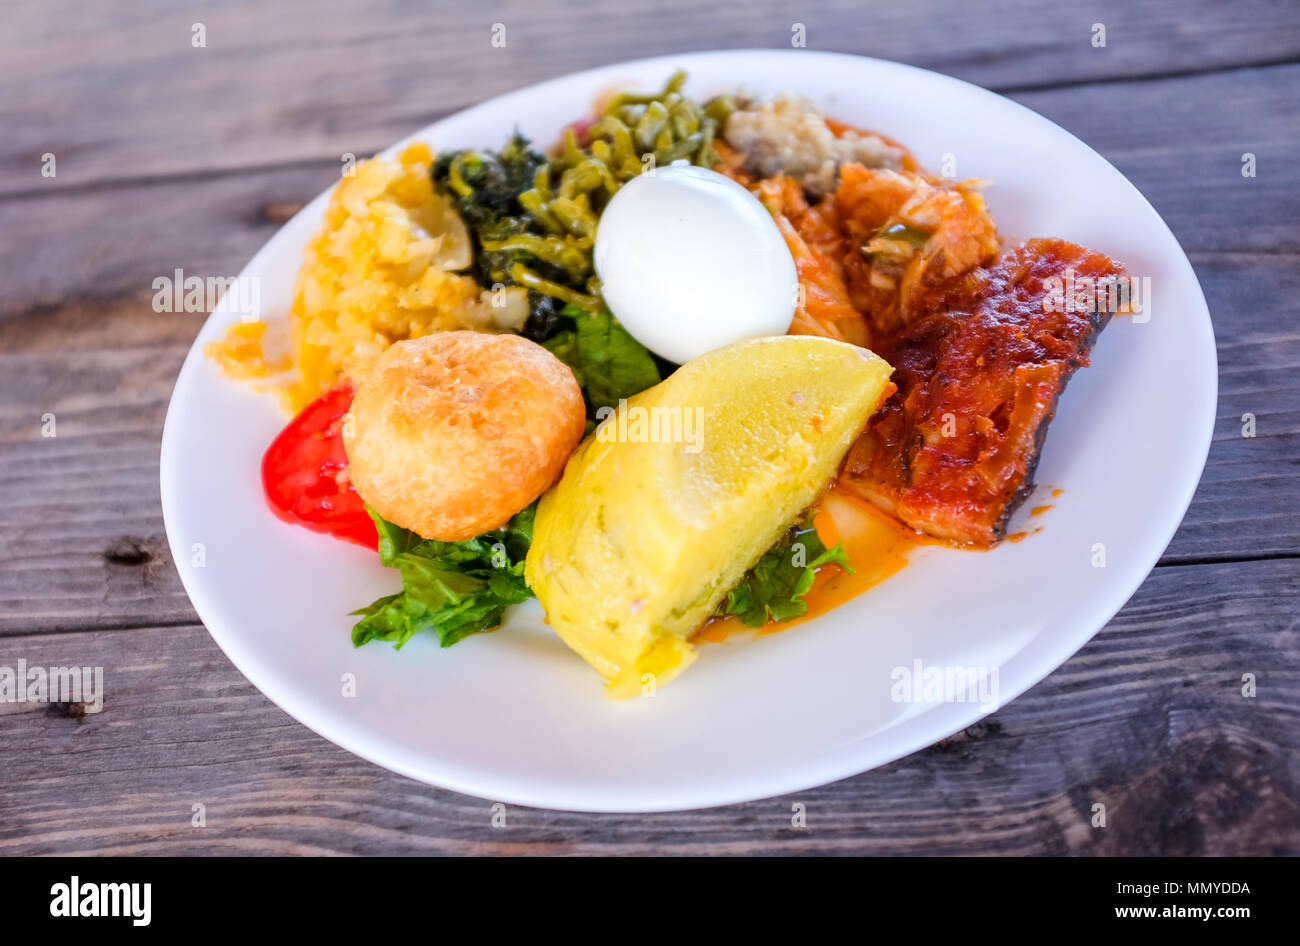 Antigua Inseln der Kleinen Antillen in der Karibik West Indies - Traditionelle Antiguan Frühstück einschließlich gewürzt Salz Fisch, fungee und Johnnie Kuchen Stockfoto